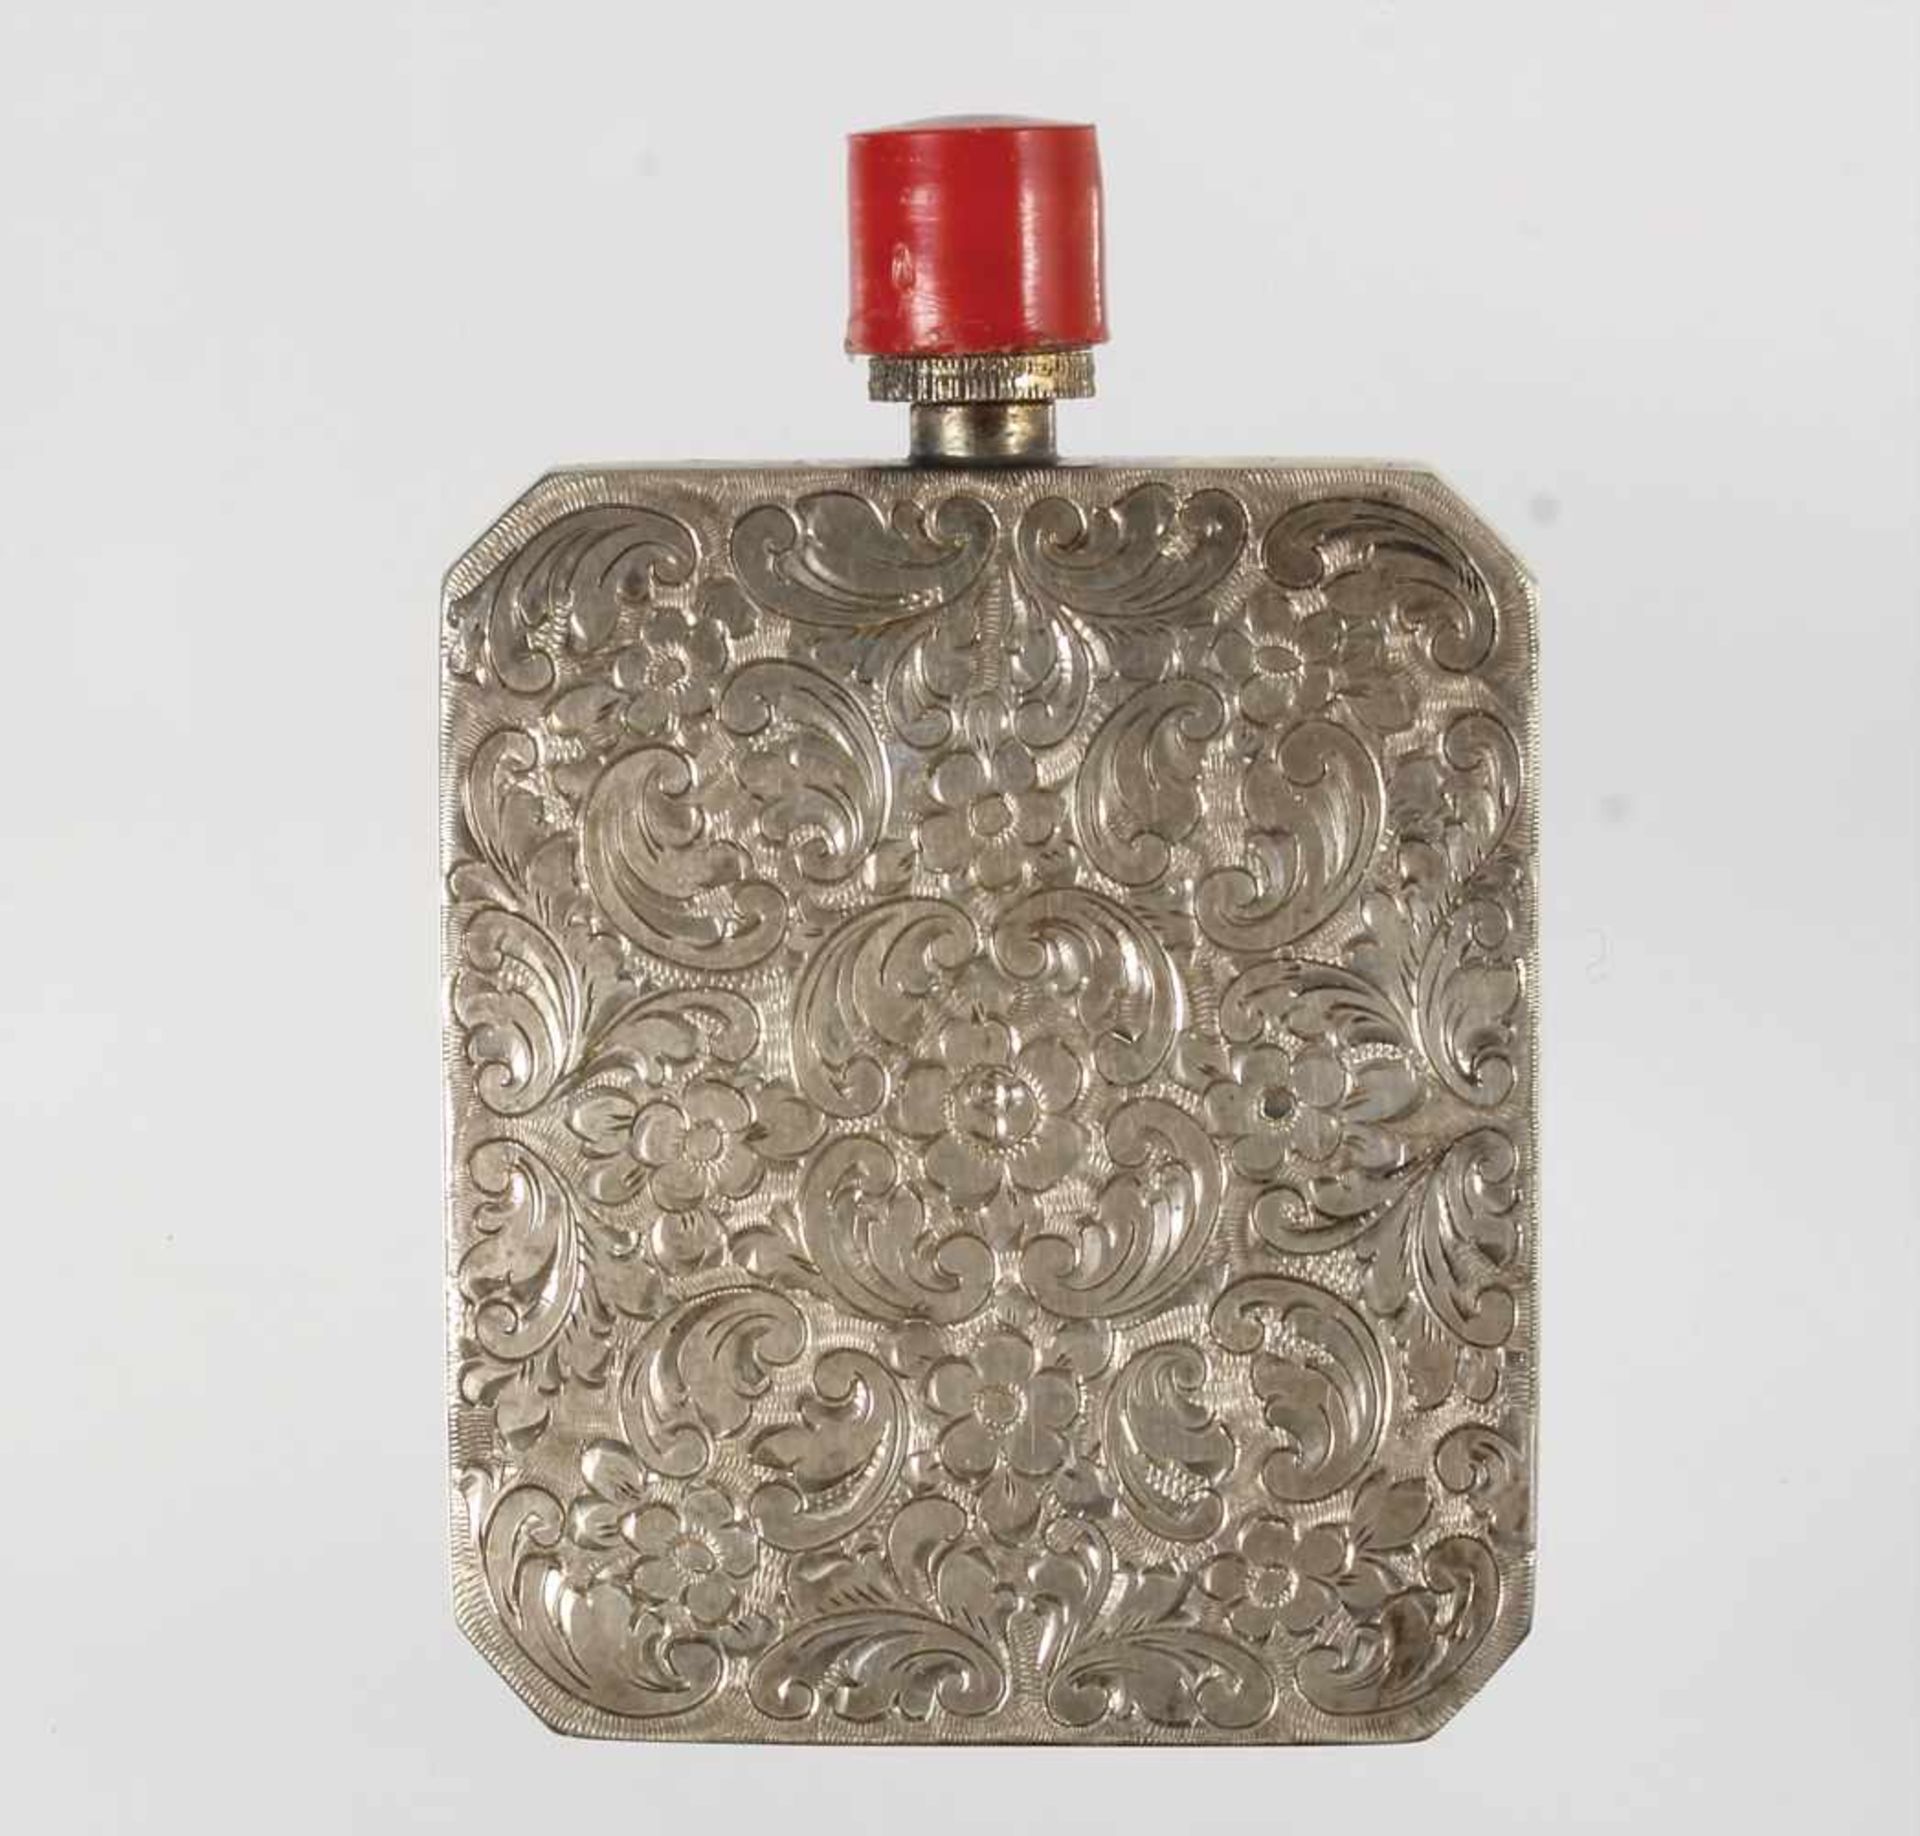 Parfum-Flacon, "ART-DECO" 1930/40er Jahre, Silber 925/000, beidseitig fein graviert, roter